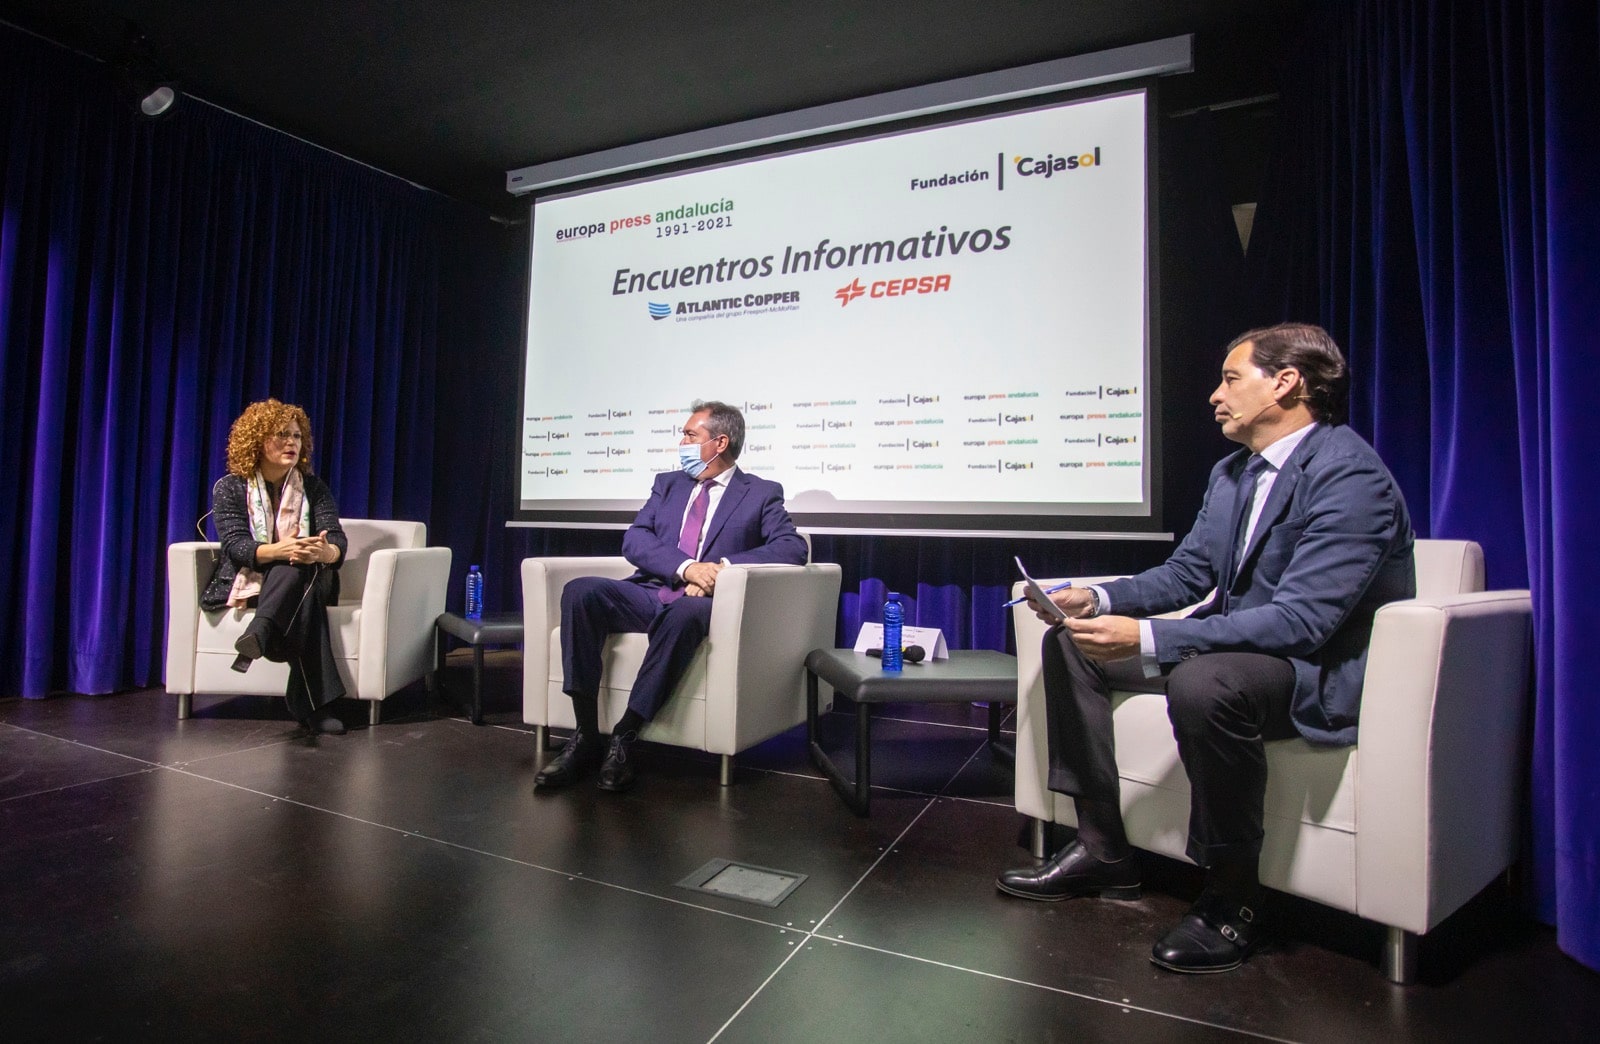 Debate Desayunos Informativos de Europa Press en Fundacion Cajasol Huelva